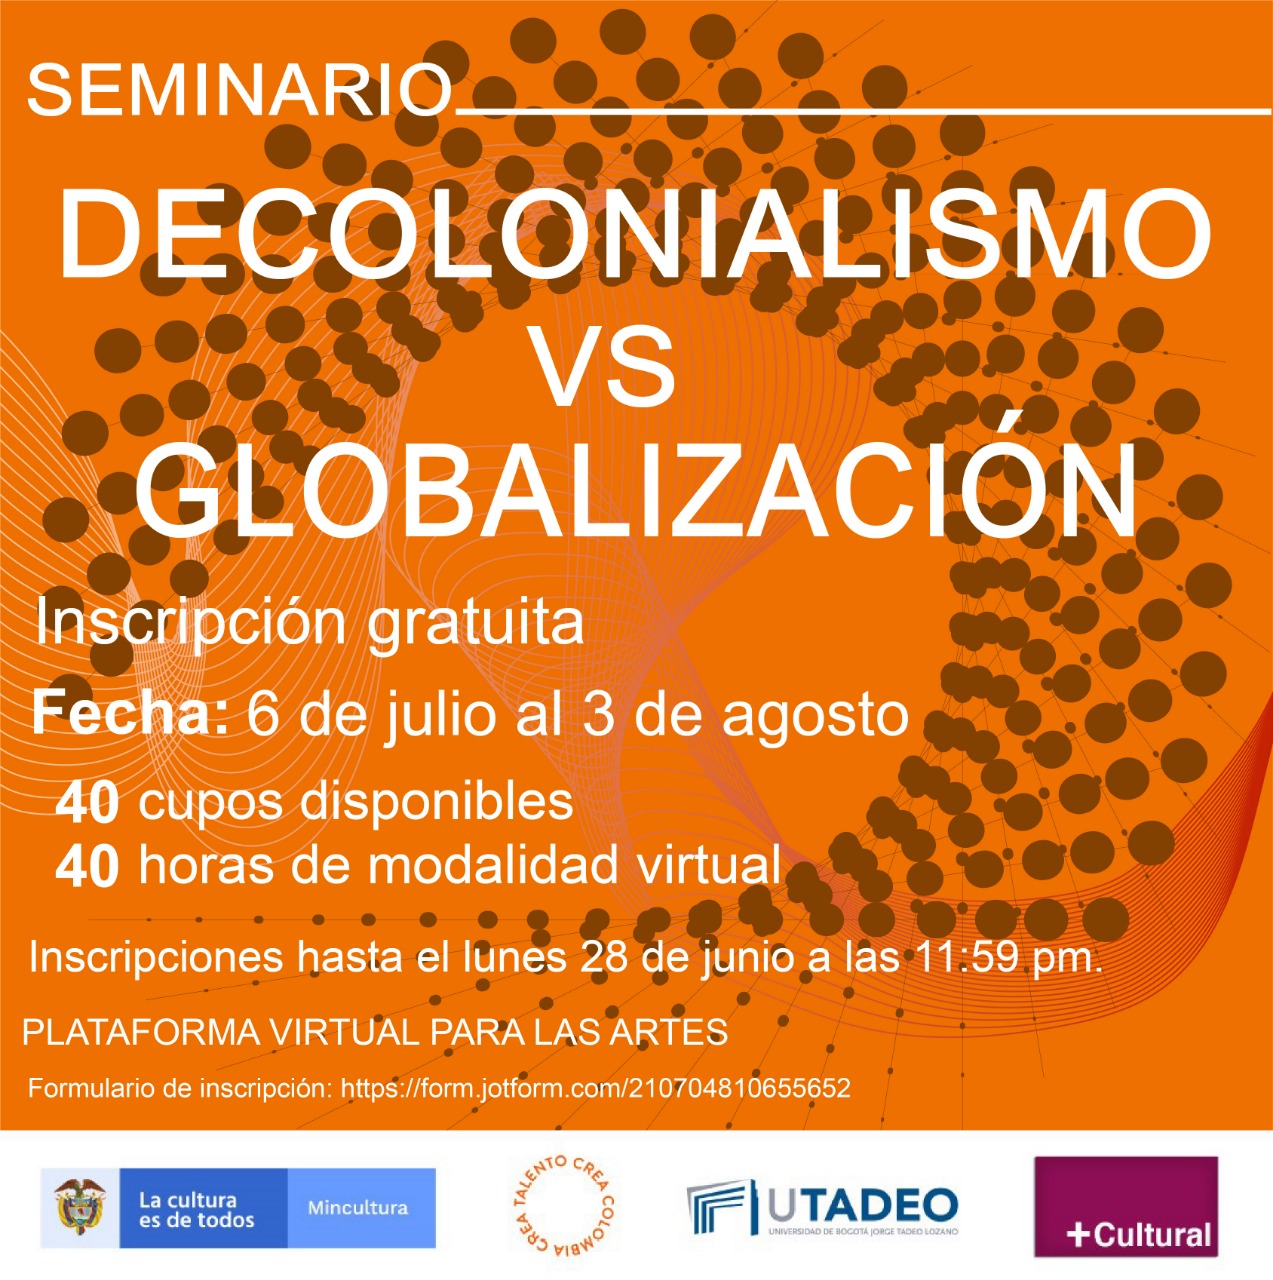 Cómo participar del seminario Decolonialismo vs Globalización